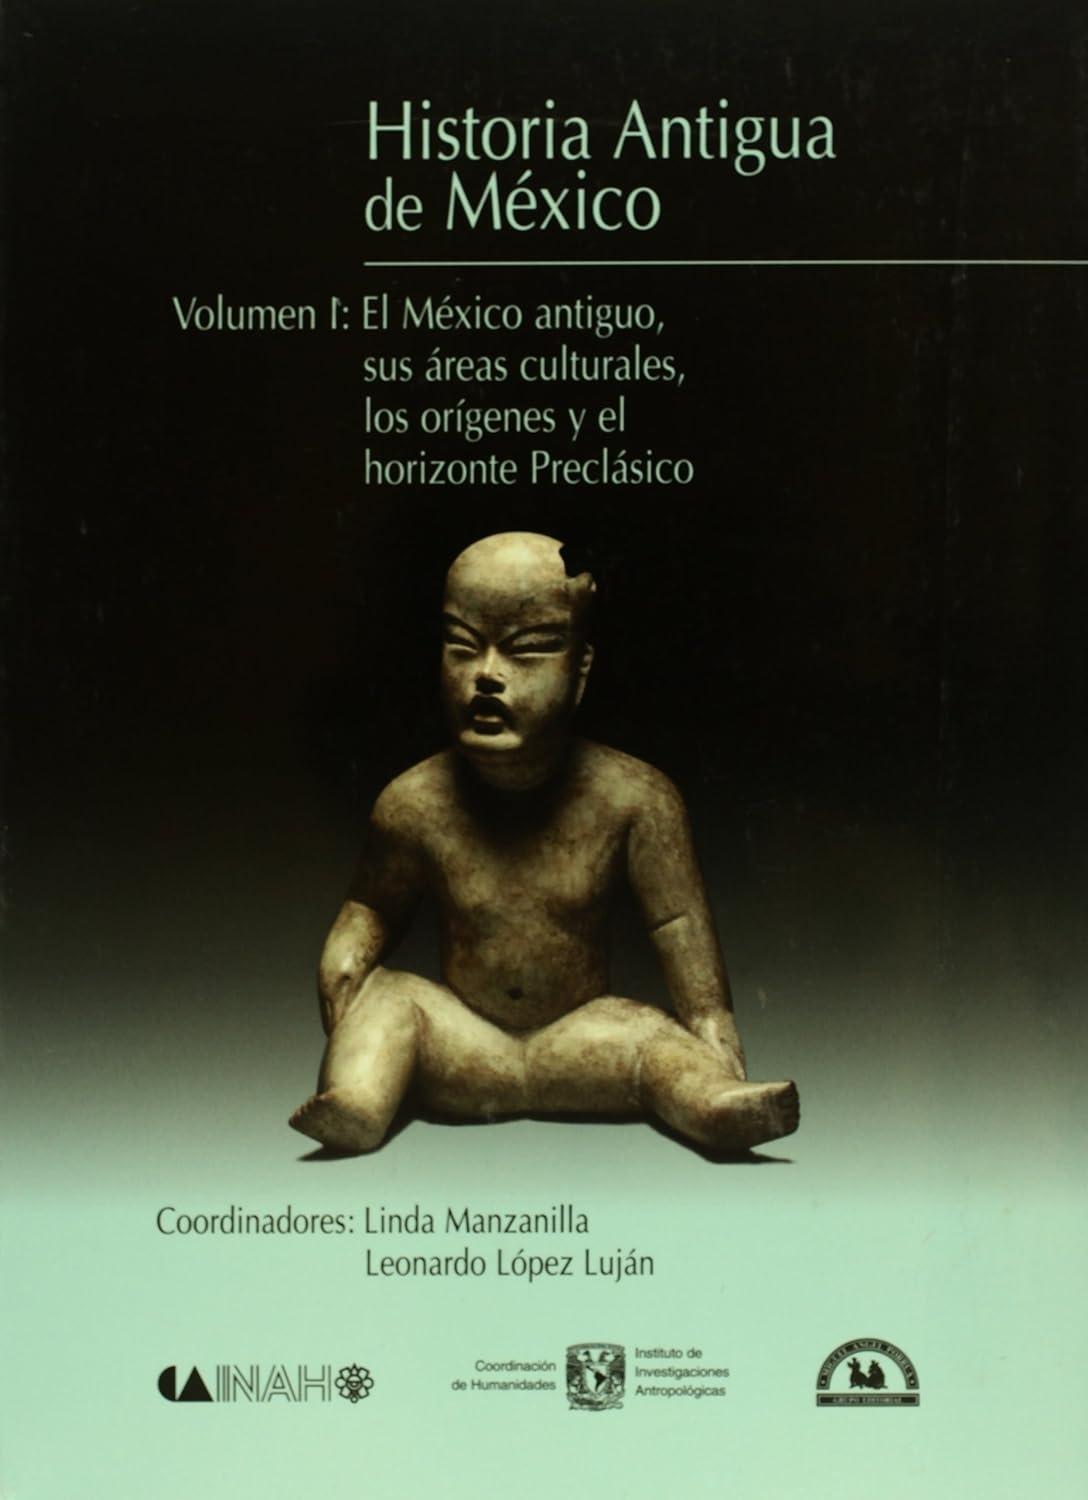 Historia Antigua de Mexico - 1 "El México antiguo, sus áreas culturales, los orígenes y el horizonte Preclásico"